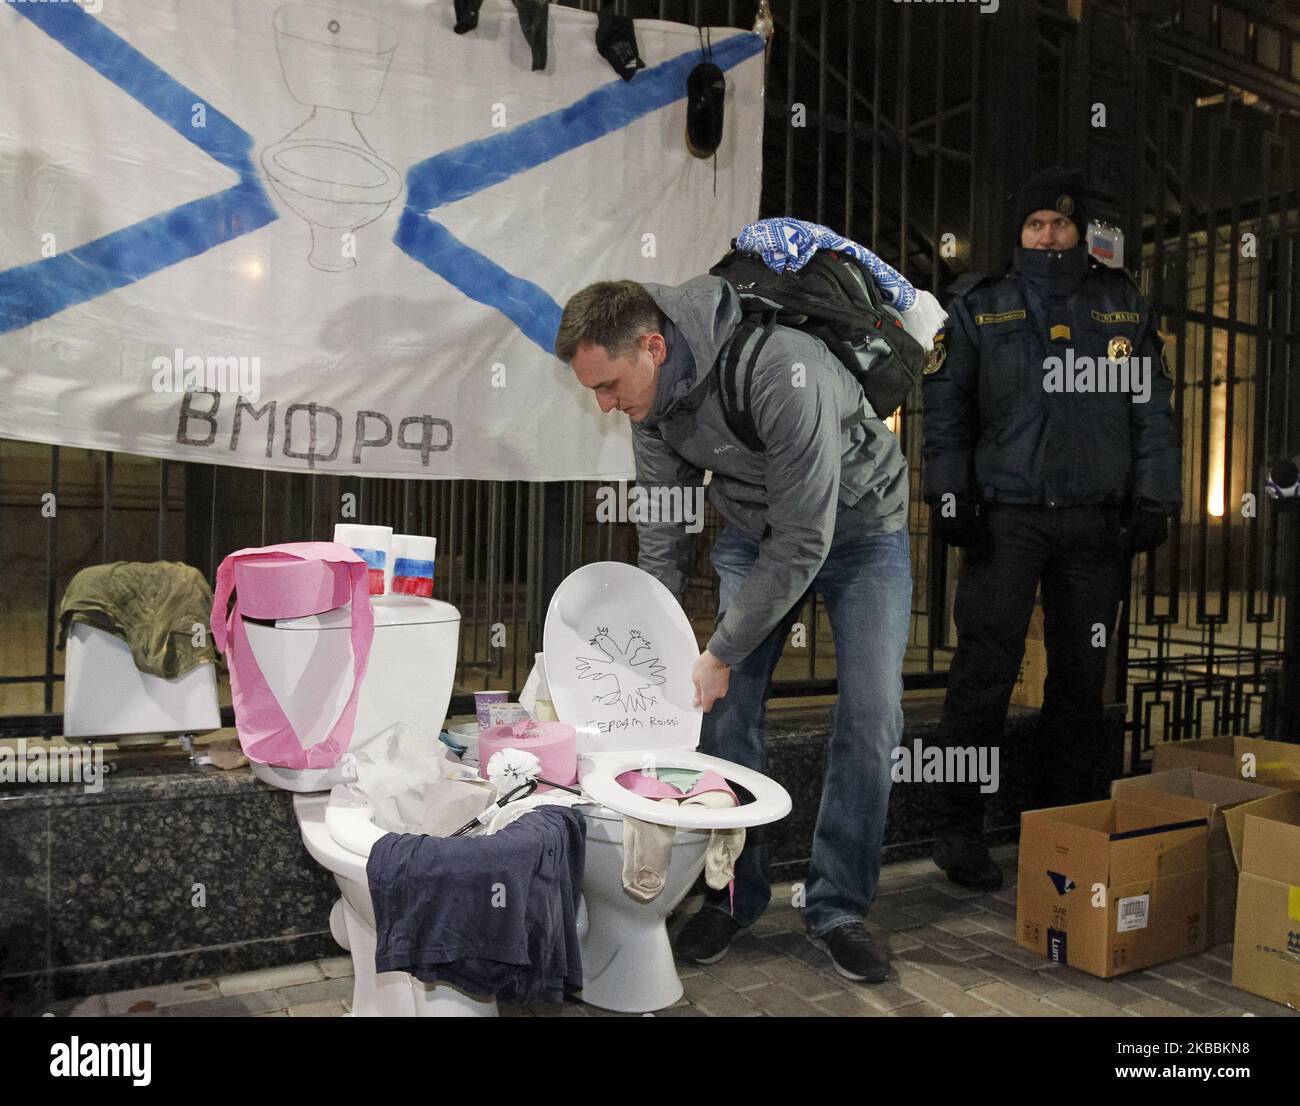 Aktivisten nehmen am 25. November 2019 an einem Protest in der Nähe der russischen Botschaft in Kiew, Ukraine, Teil. Aktivisten nehmen an der Aktion Teil, während sie protestierten, in Verbindung mit der Information, dass beschlagnahmte ukrainische Schiffe ohne Teile ihrer Ausrüstung in die Ukraine zurückgebracht wurden. Die ukrainischen Schiffe „Berdiansk“, „Nikopol“ und „Yany Kapu“, die vor einem Jahr von der Russischen Föderation beschlagnahmt wurden, erreichten den ukrainischen Hafen von Otschakiv bei Odesa und wurden am 20. November 2019 vom ukrainischen Präsidenten Wolodymyr Zelenski getroffen. Wie Medien berichteten, demontierten die Russen einige Kommunikations- und Navigationsgeräte auf Stockfoto